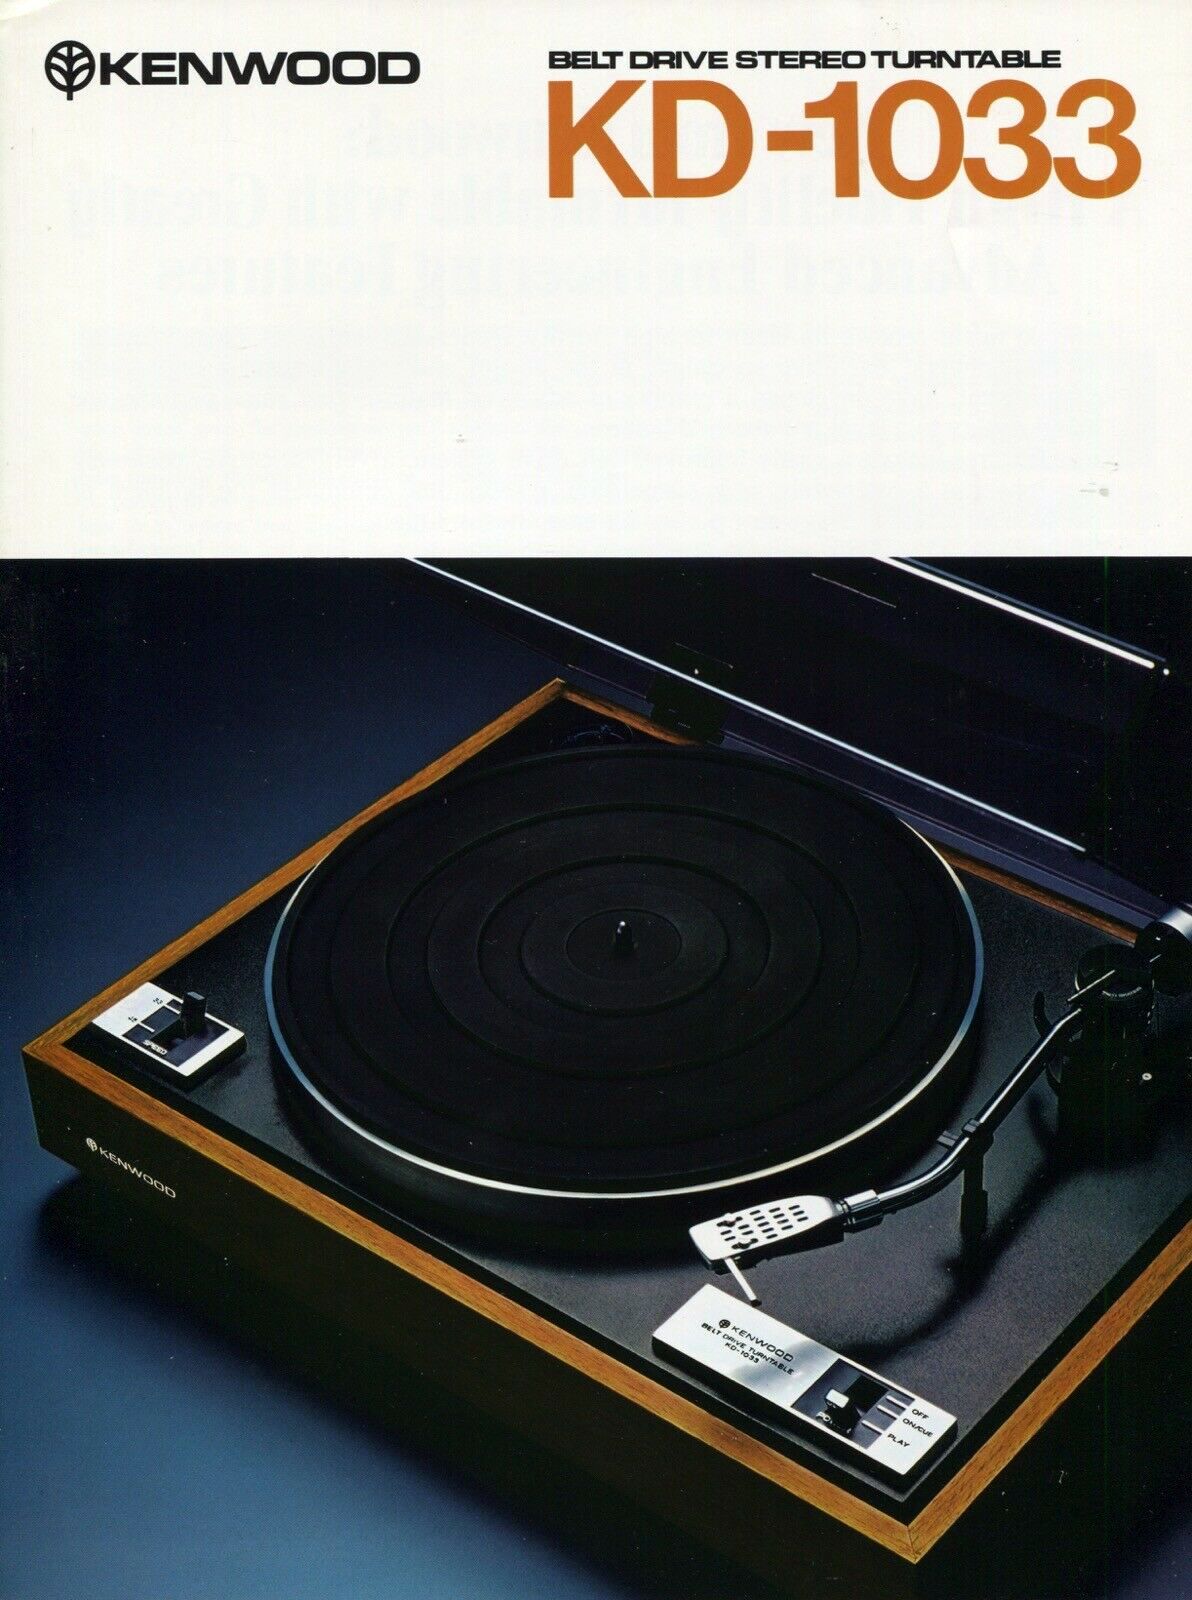 Kenwood KD-1033-Prospekt-1977.jpg